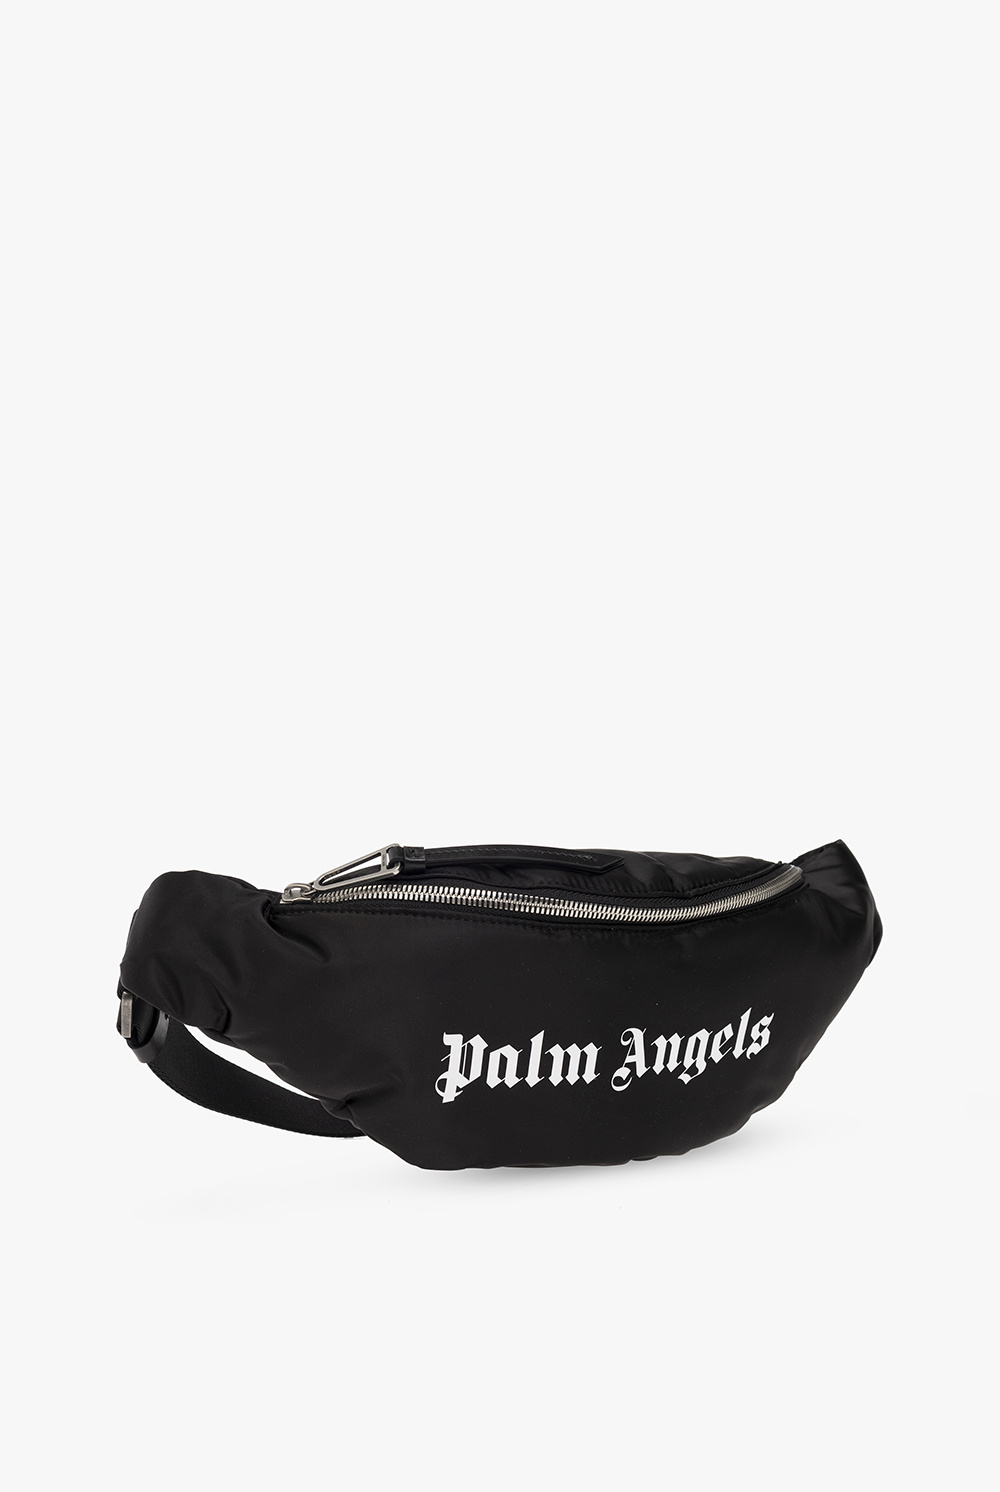 Palm Angels shoulder bag 22